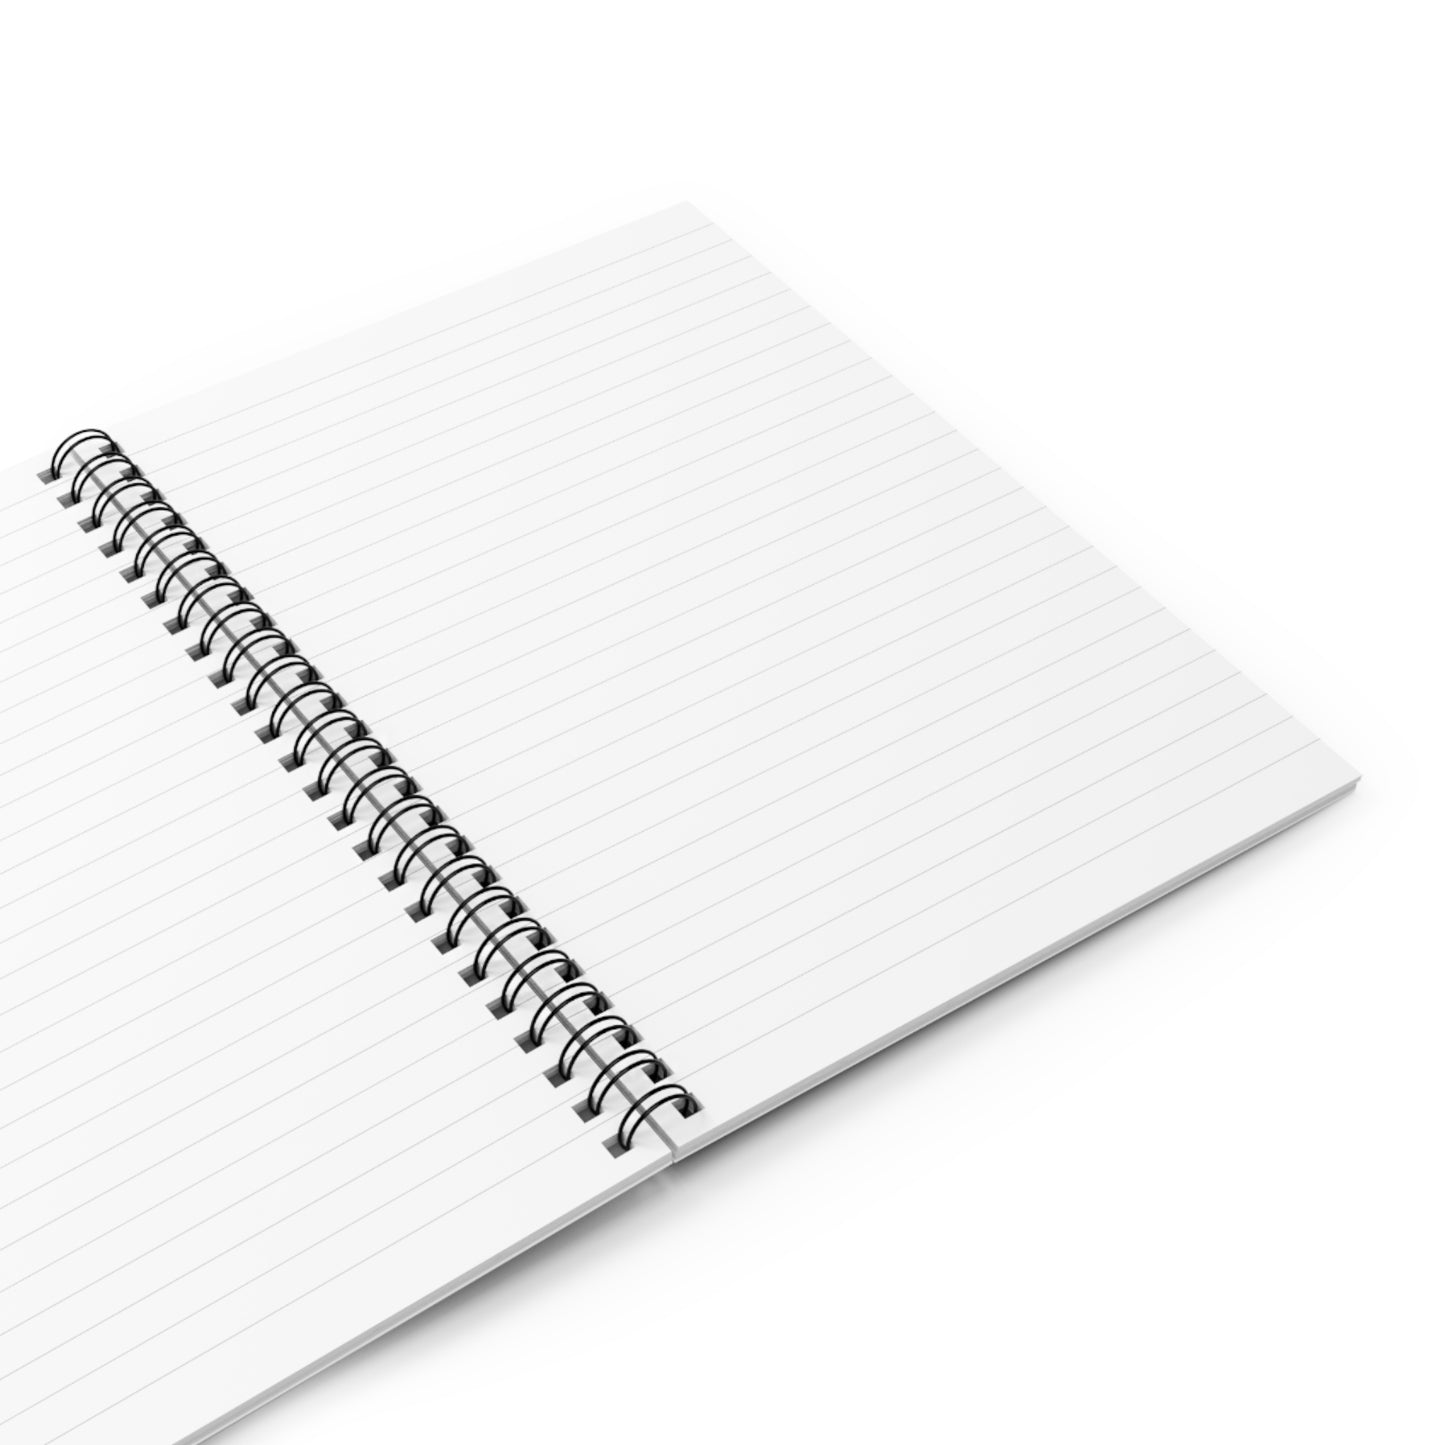 Redeemed Spiral Notebook - Ruled Line